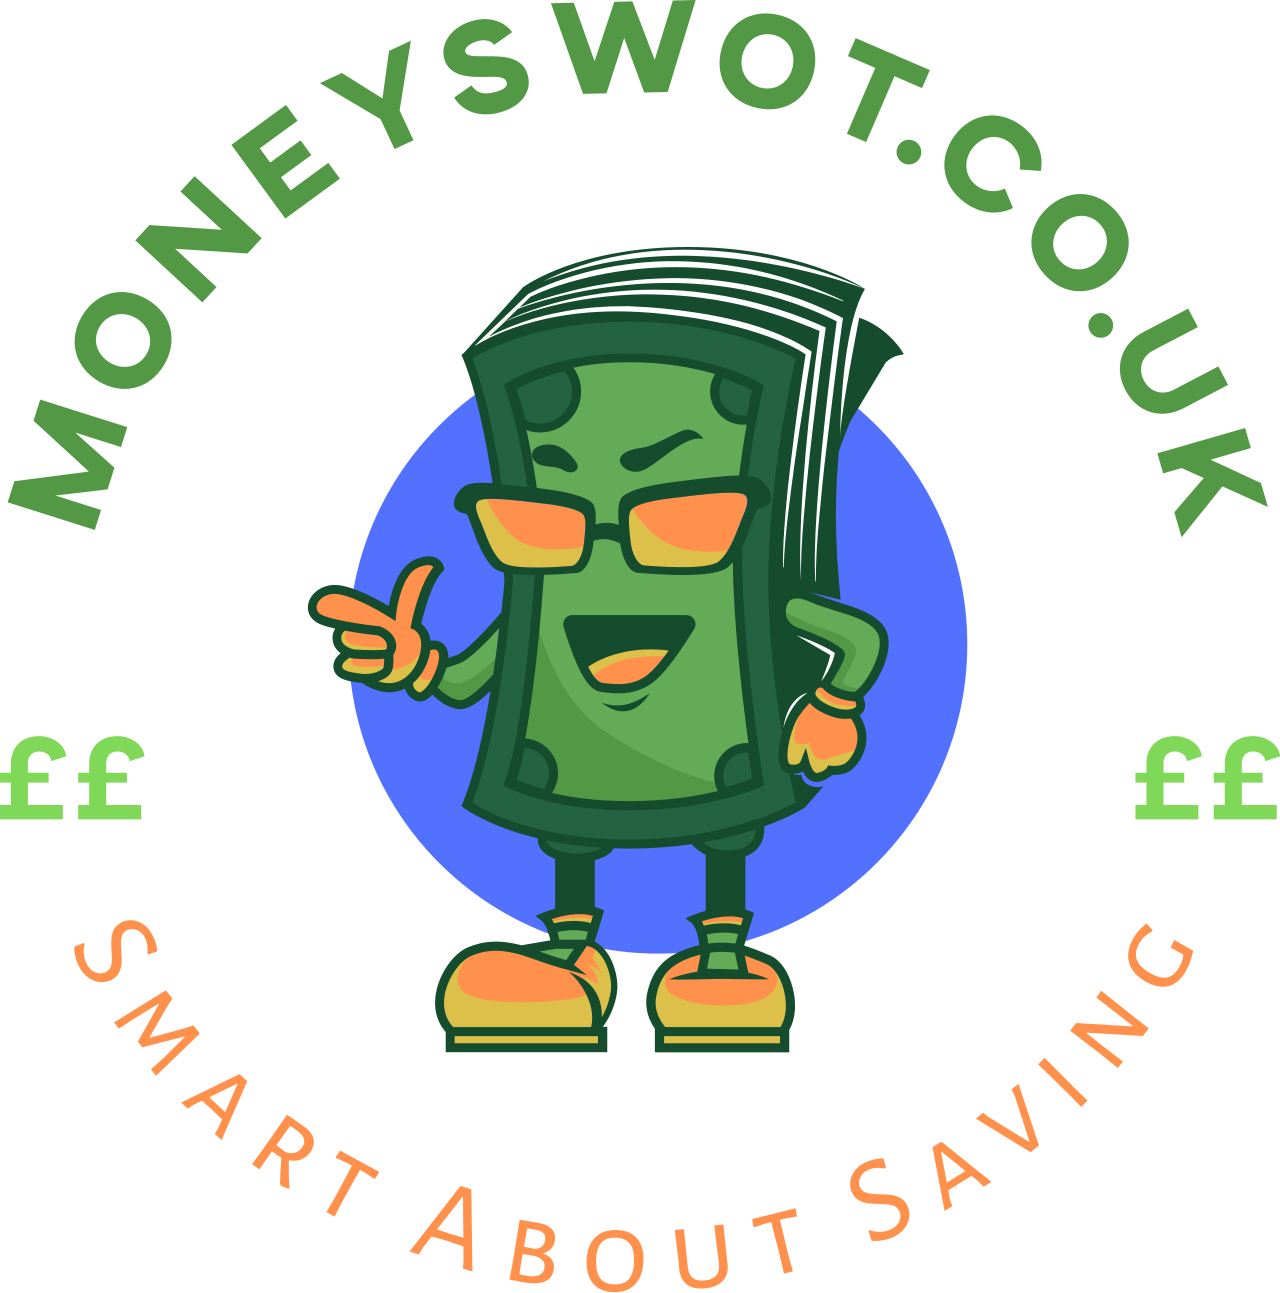 MoneySwot.co.uk's logo